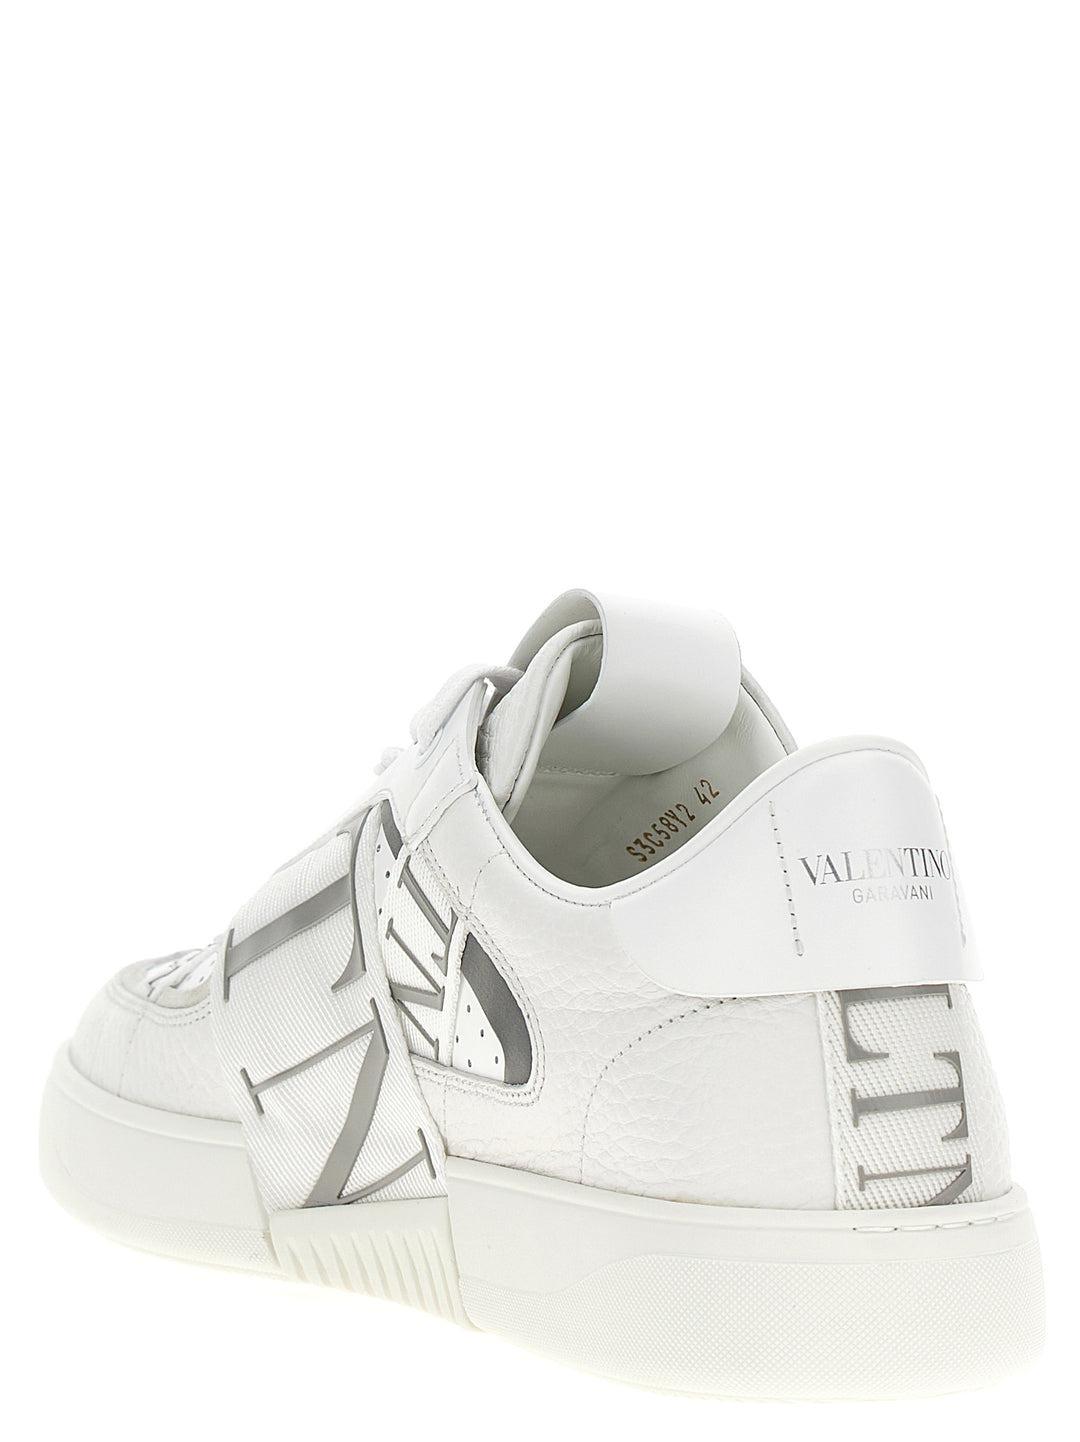 Vl7n Sneakers Bianco